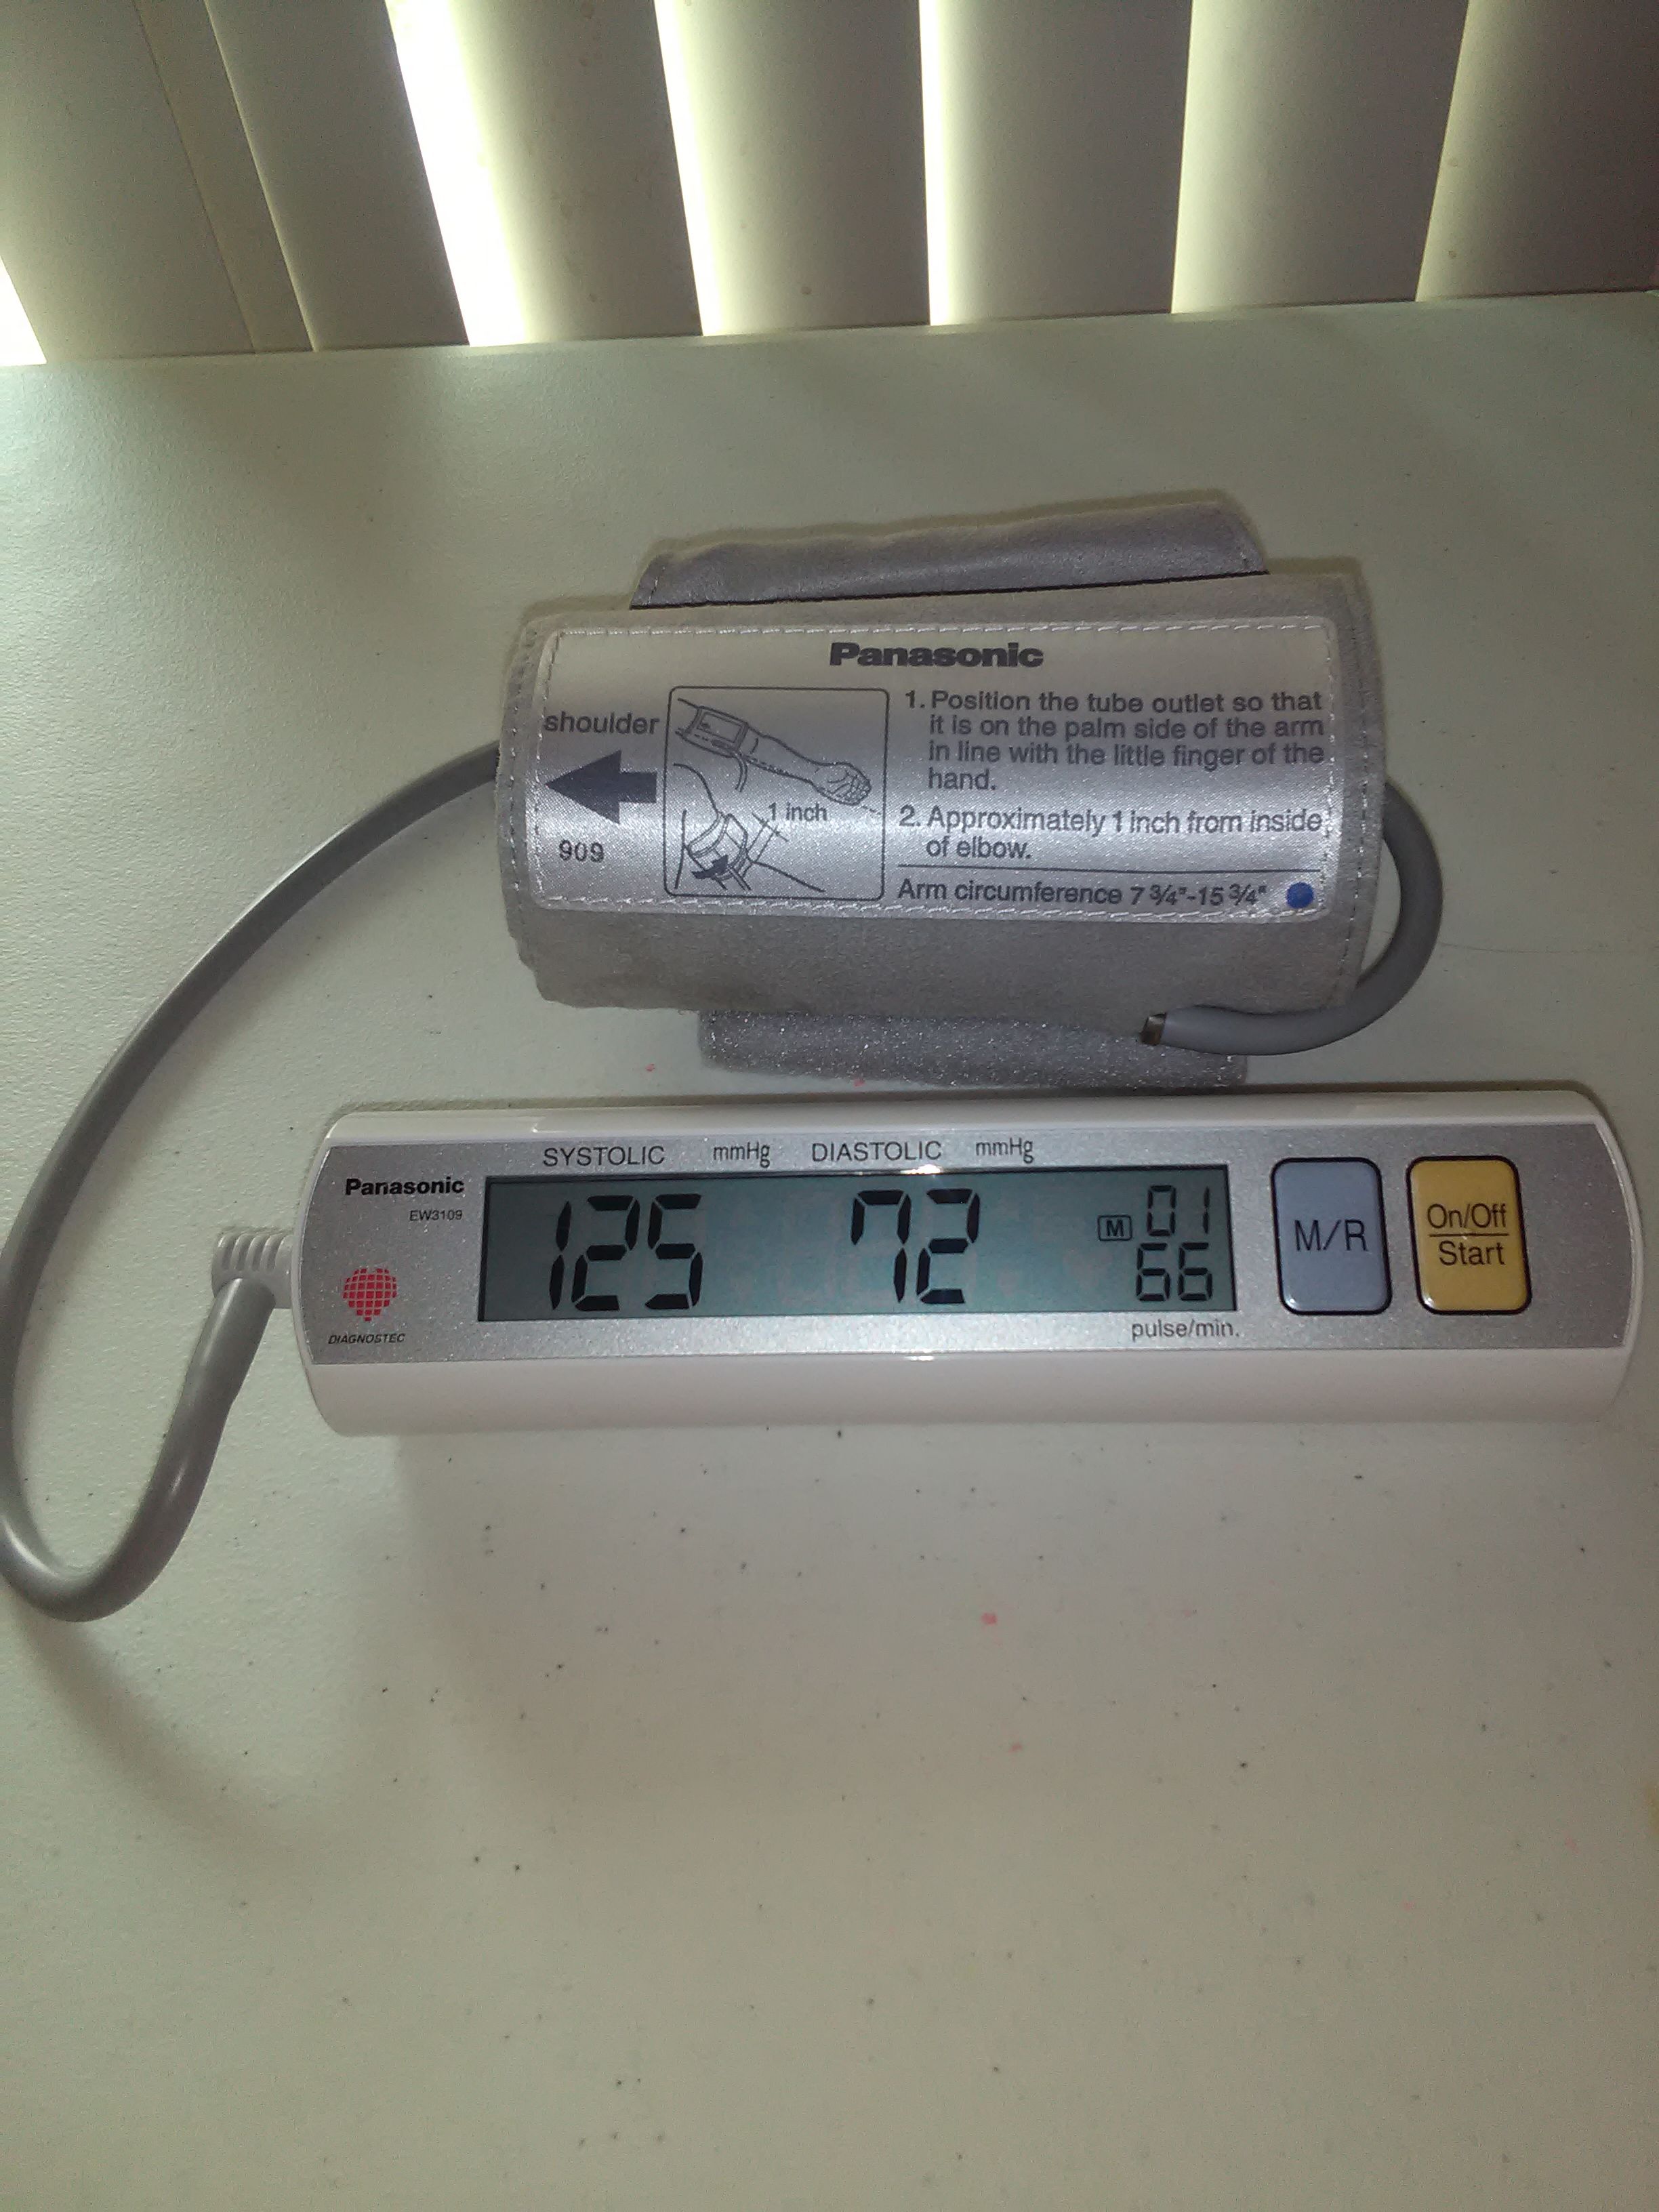 Panasonic automatic blood pressure monitor